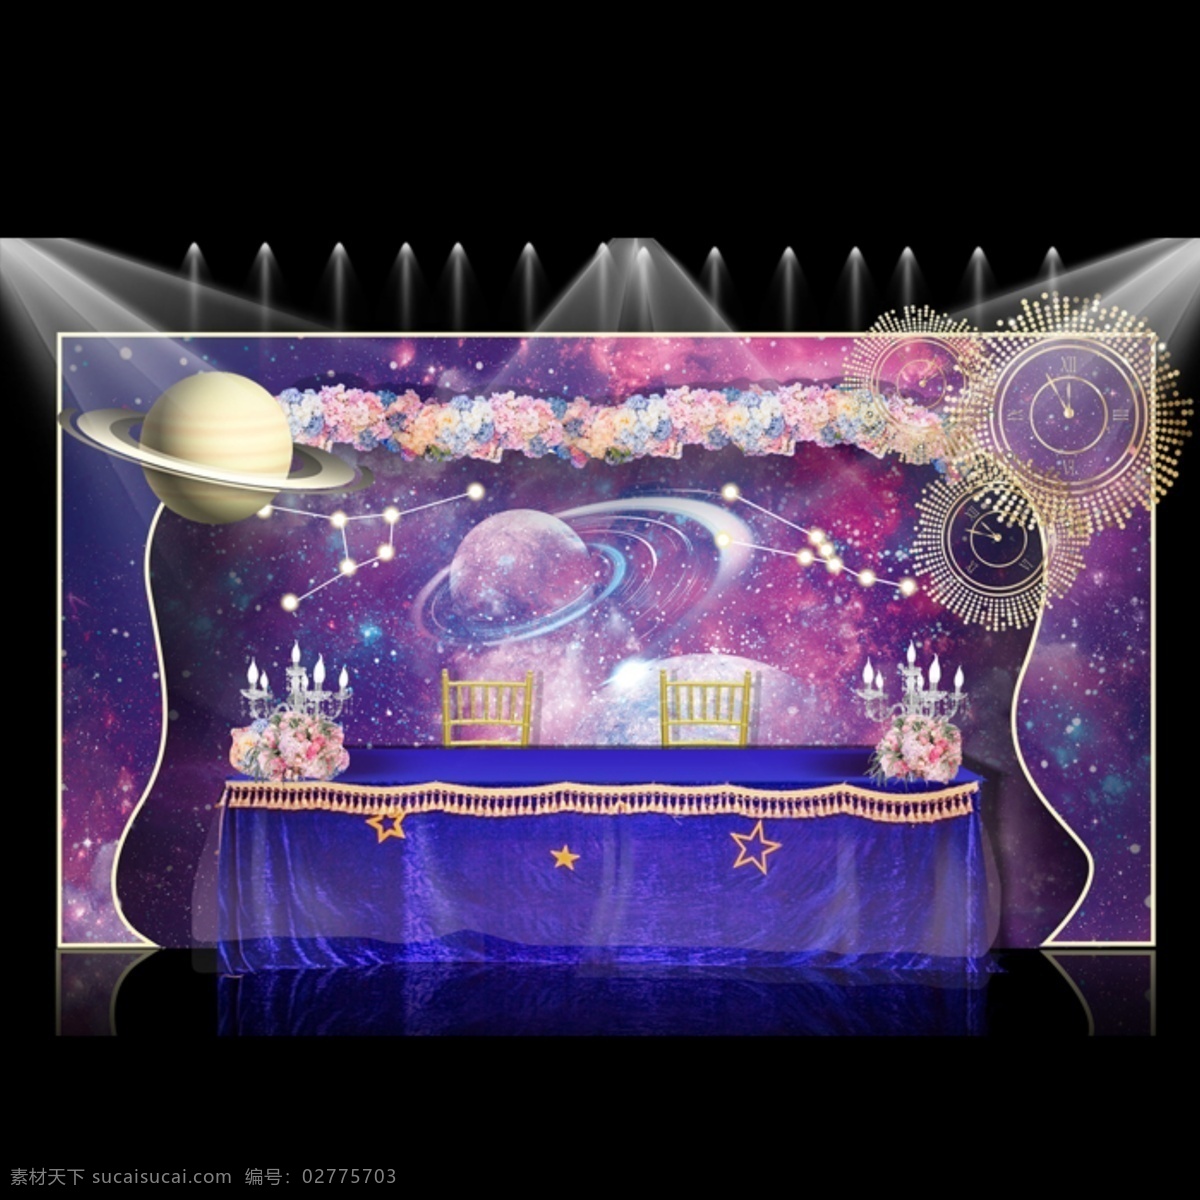 紫色 婚礼 舞台 布置 效果图 婚礼场地 婚礼效果图 红色 婚礼背景 梦幻 婚礼素材